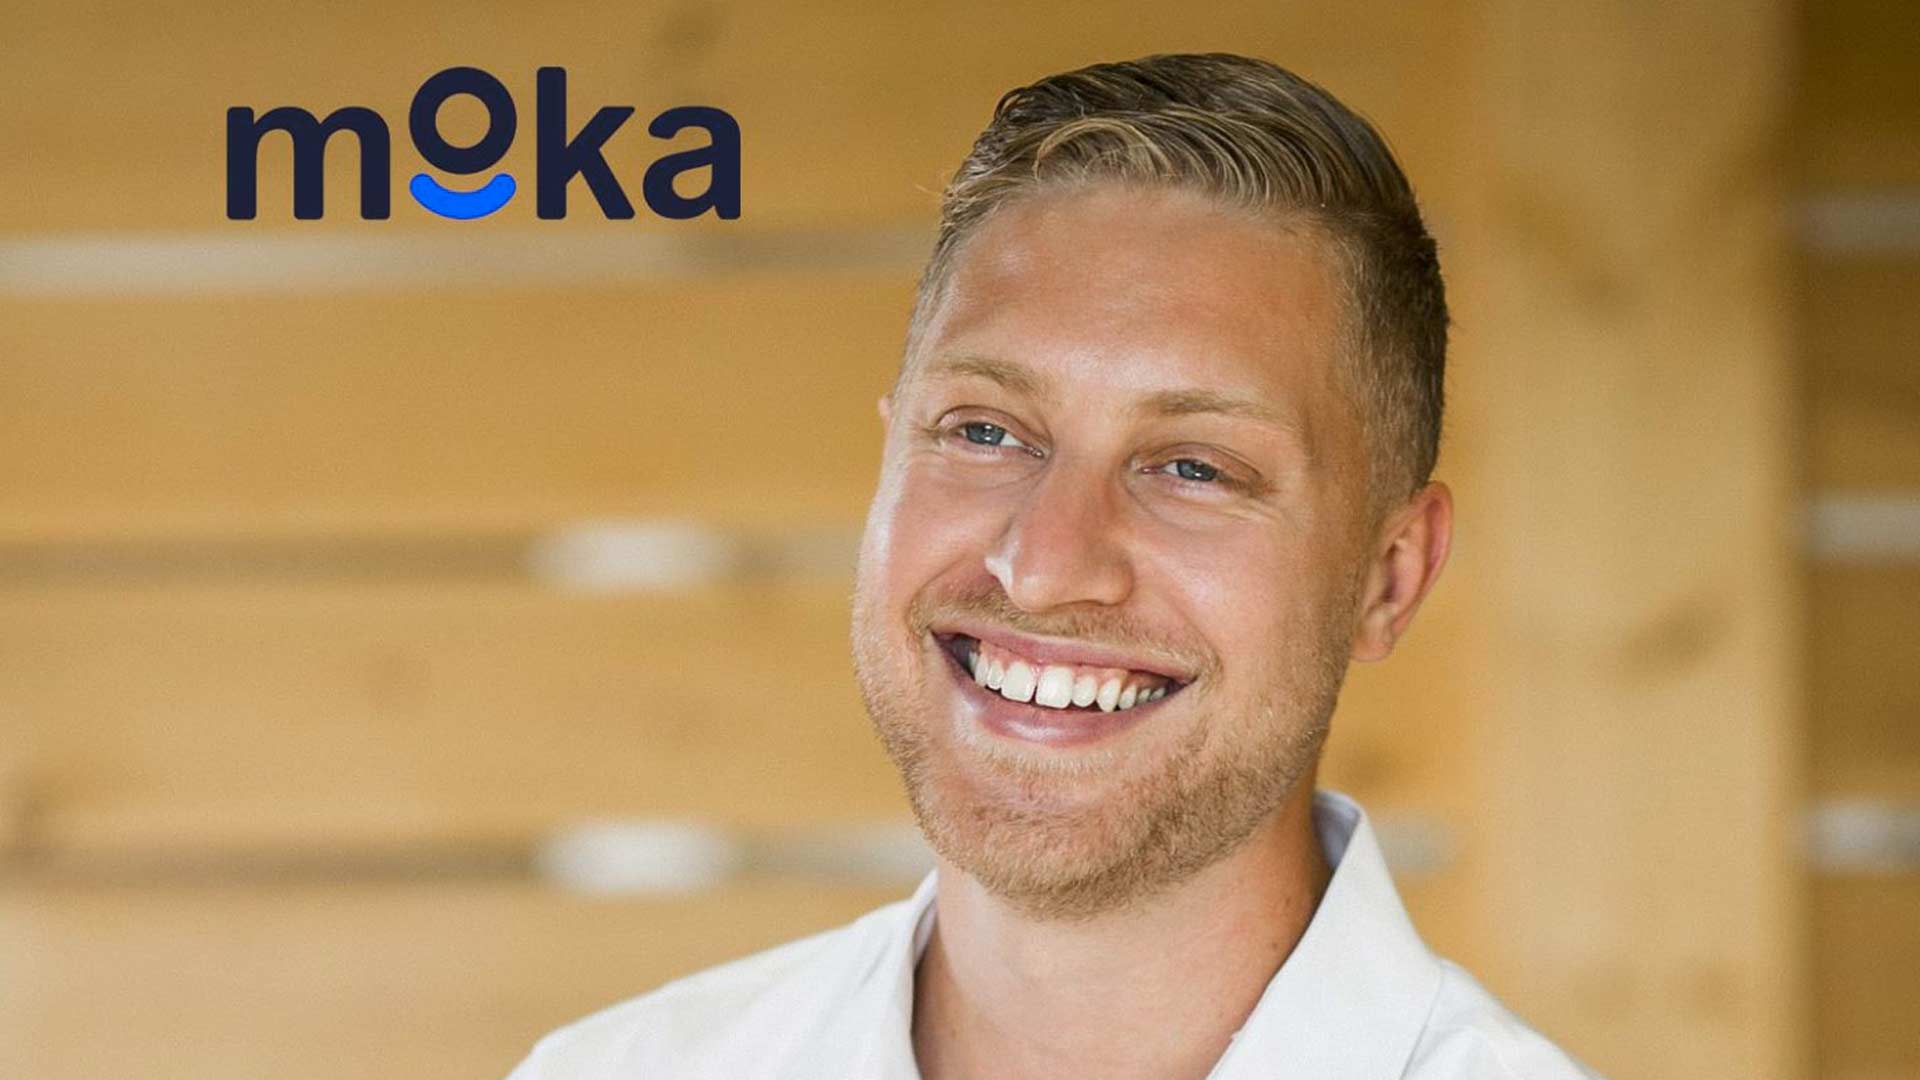 Moka, het unieke en innovatieve bedrijf dat de regio Parijs razendsnel verovert